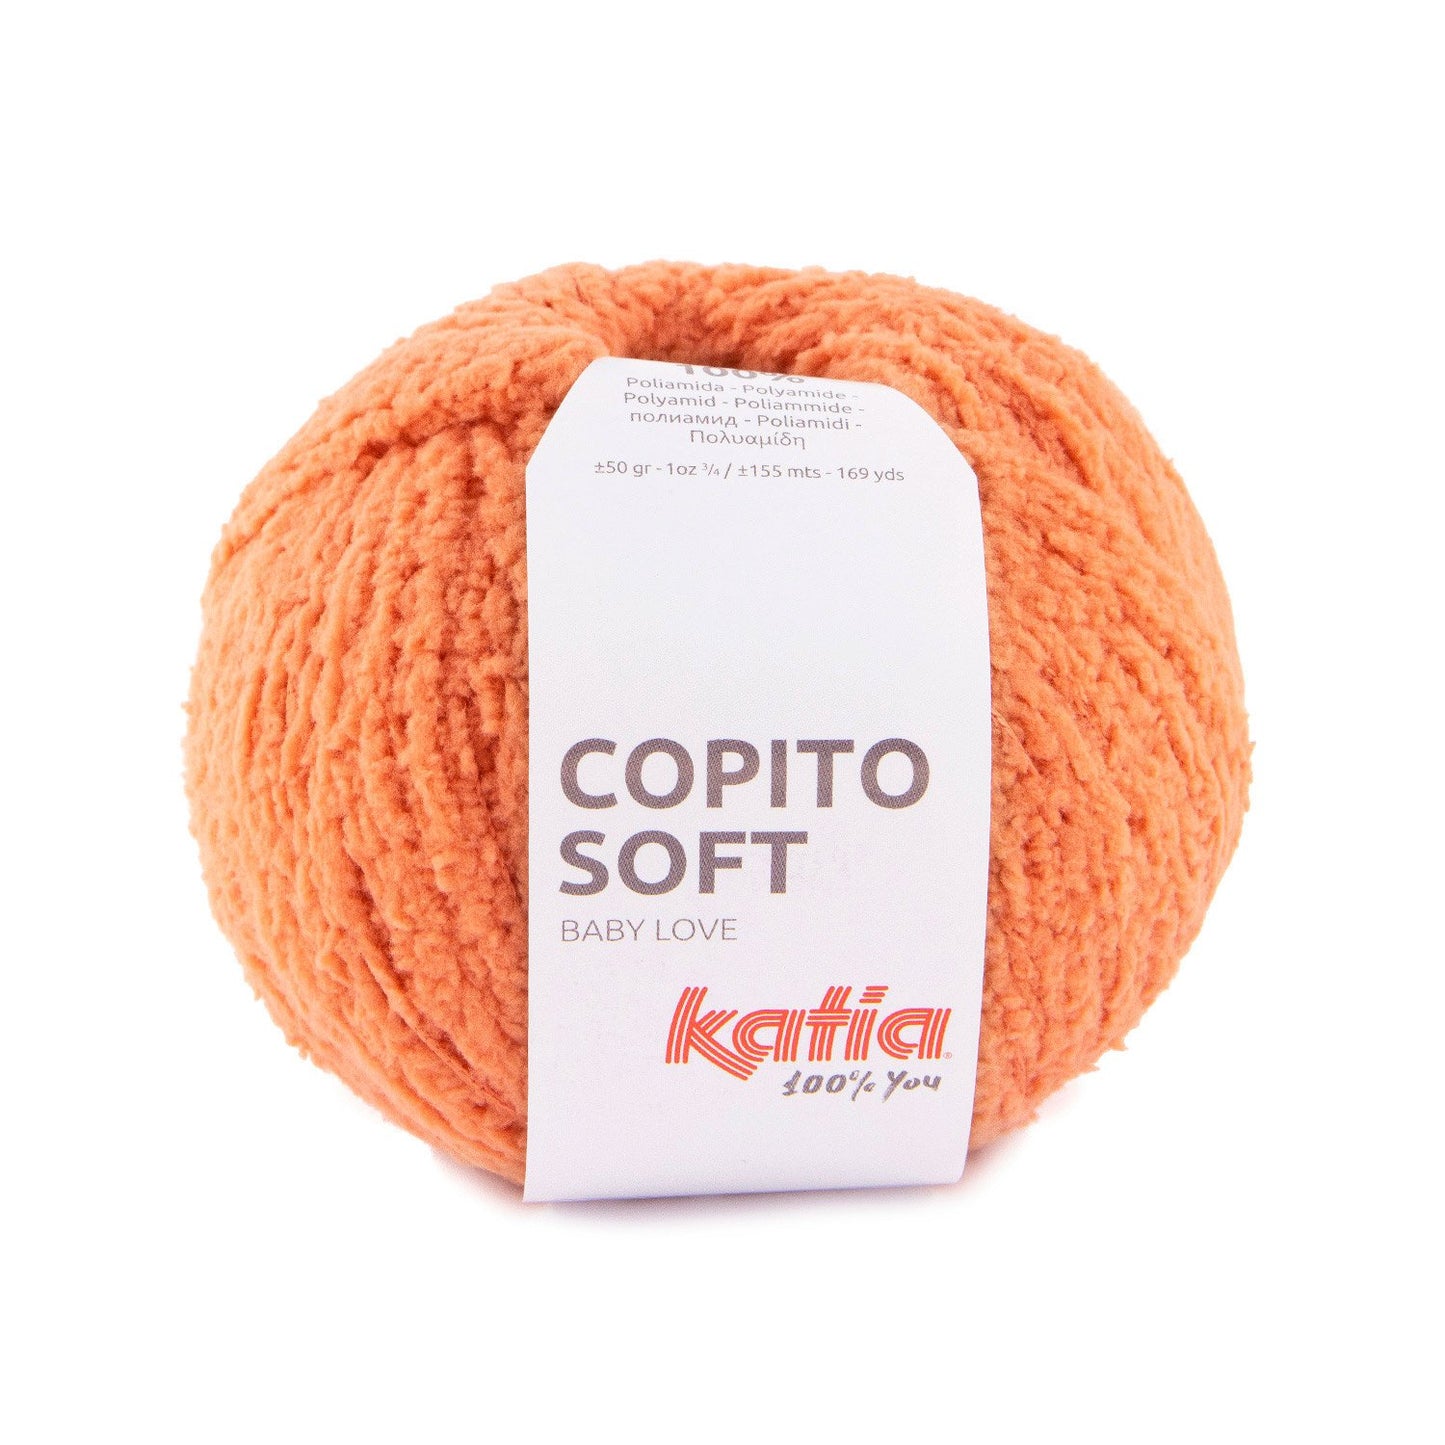 Copito Soft  29.